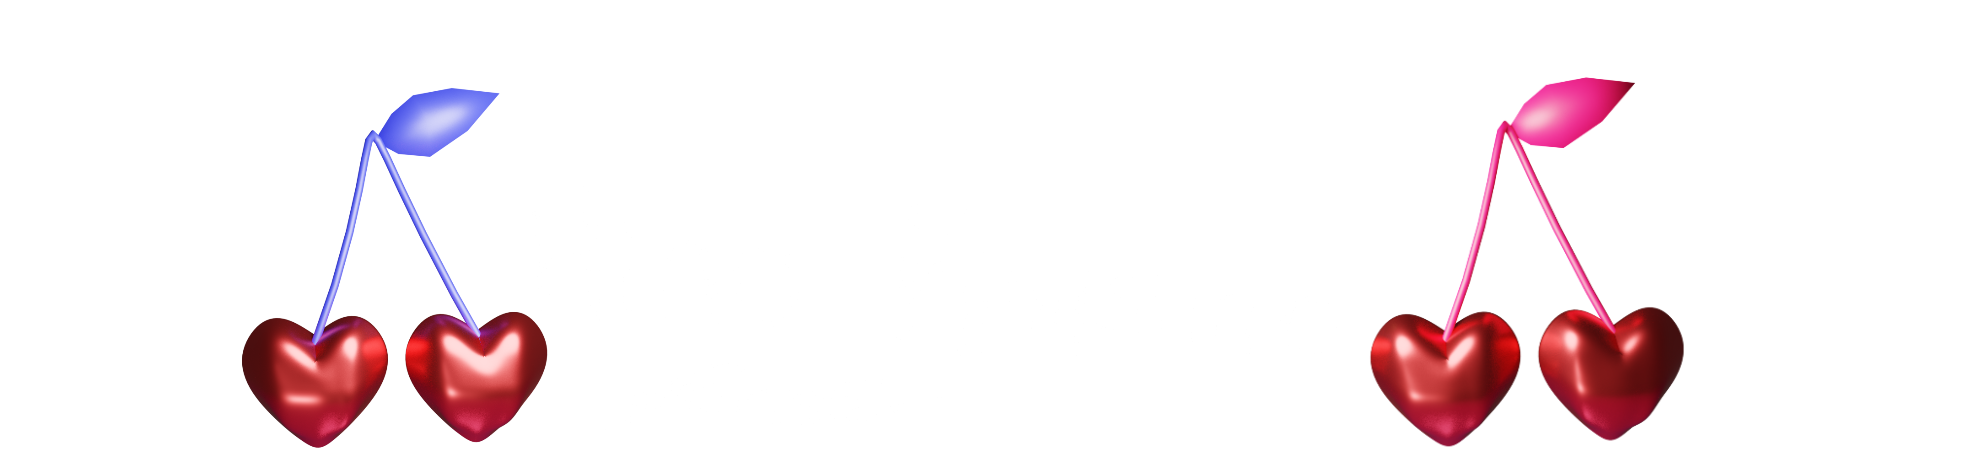 Hino Kimishima